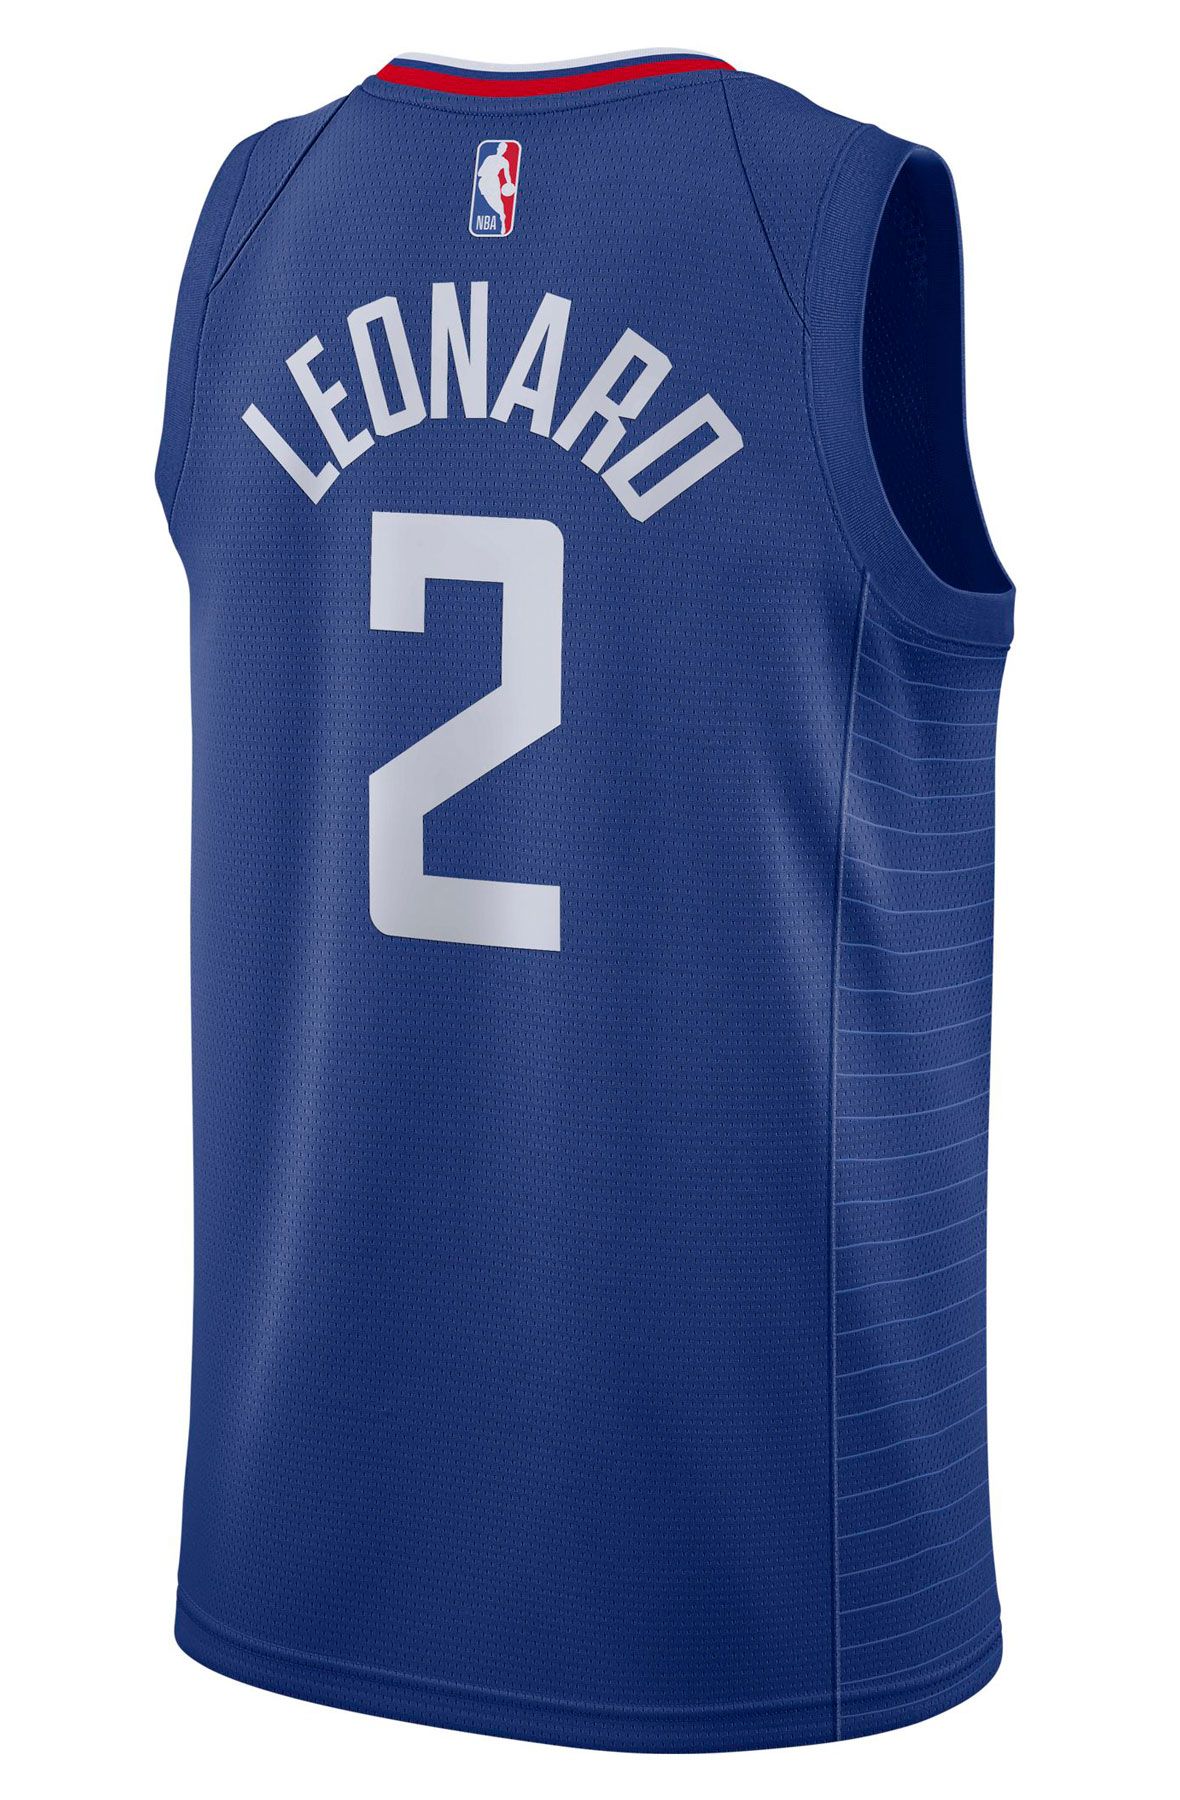 NIKE Kawhi Leonard Clippers Icon Edition 2020 NBA Swingman Jersey ...